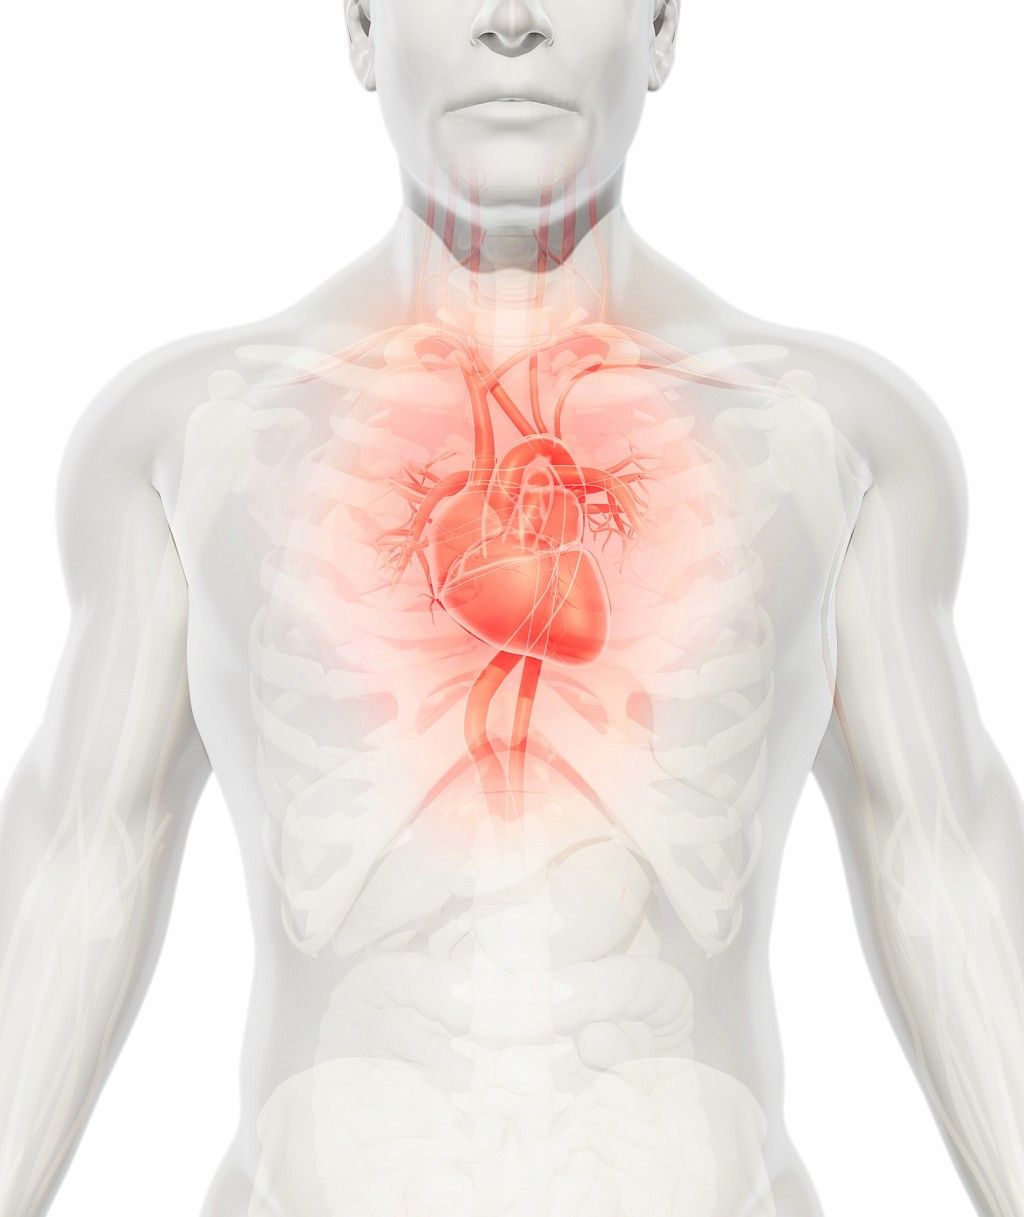 Tukipumppu voi korvata sydänsiirteen